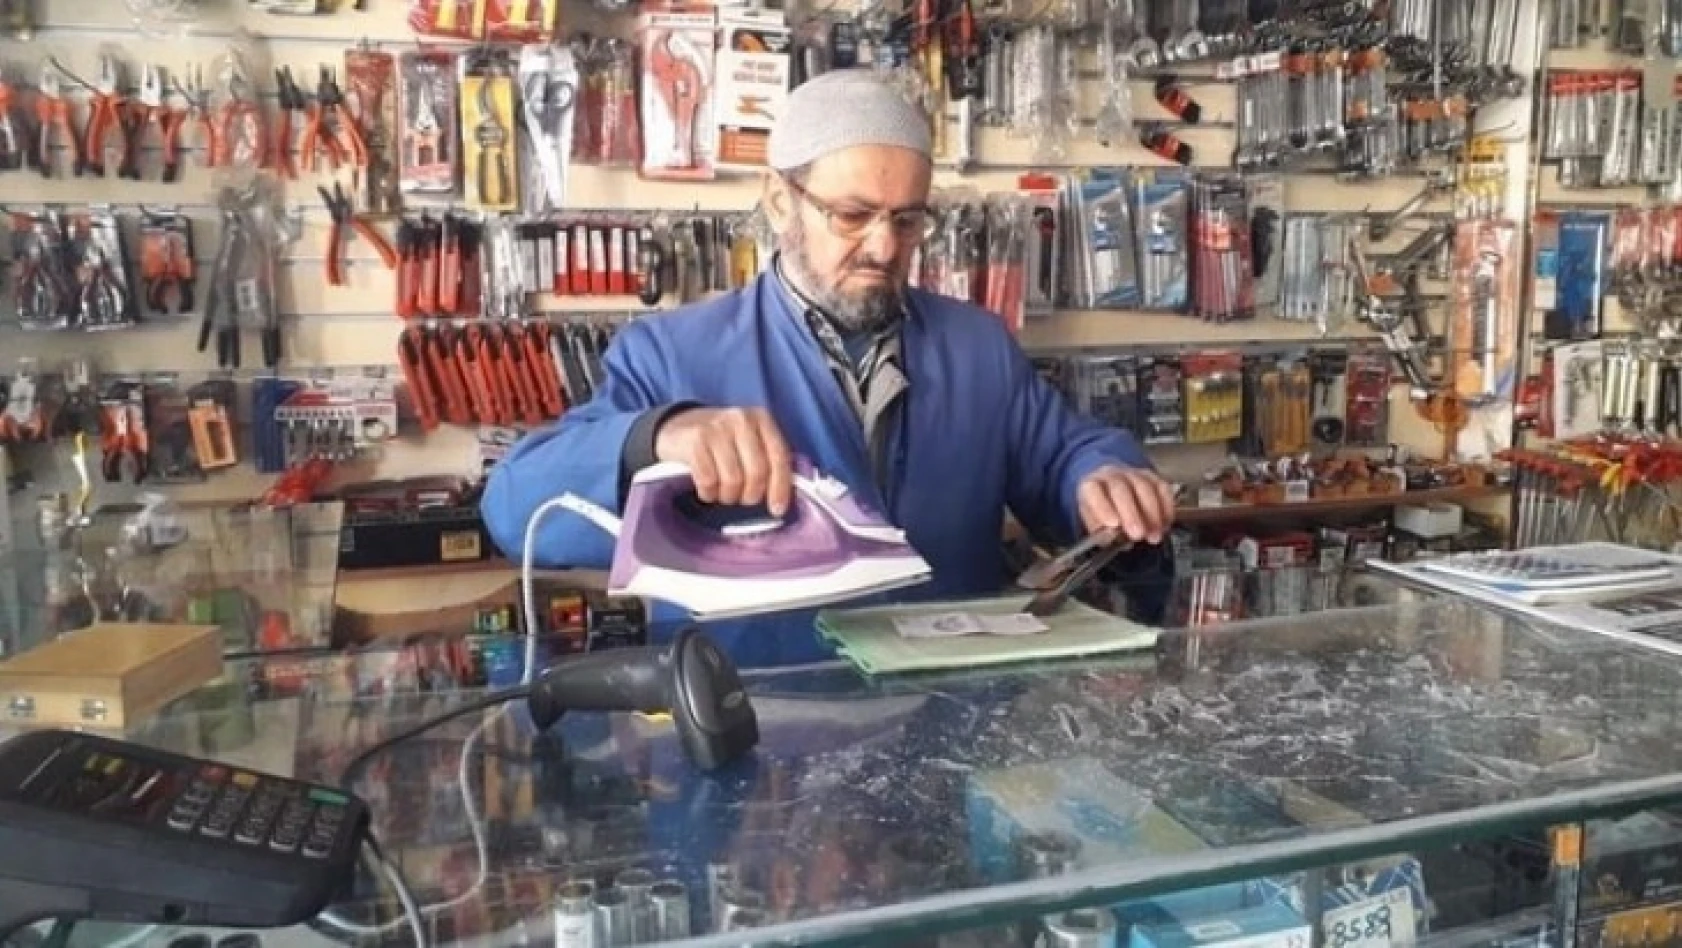 Akdeniz: '65 yaş ve üstü esnafa dükkan açması için izin verilmeli'